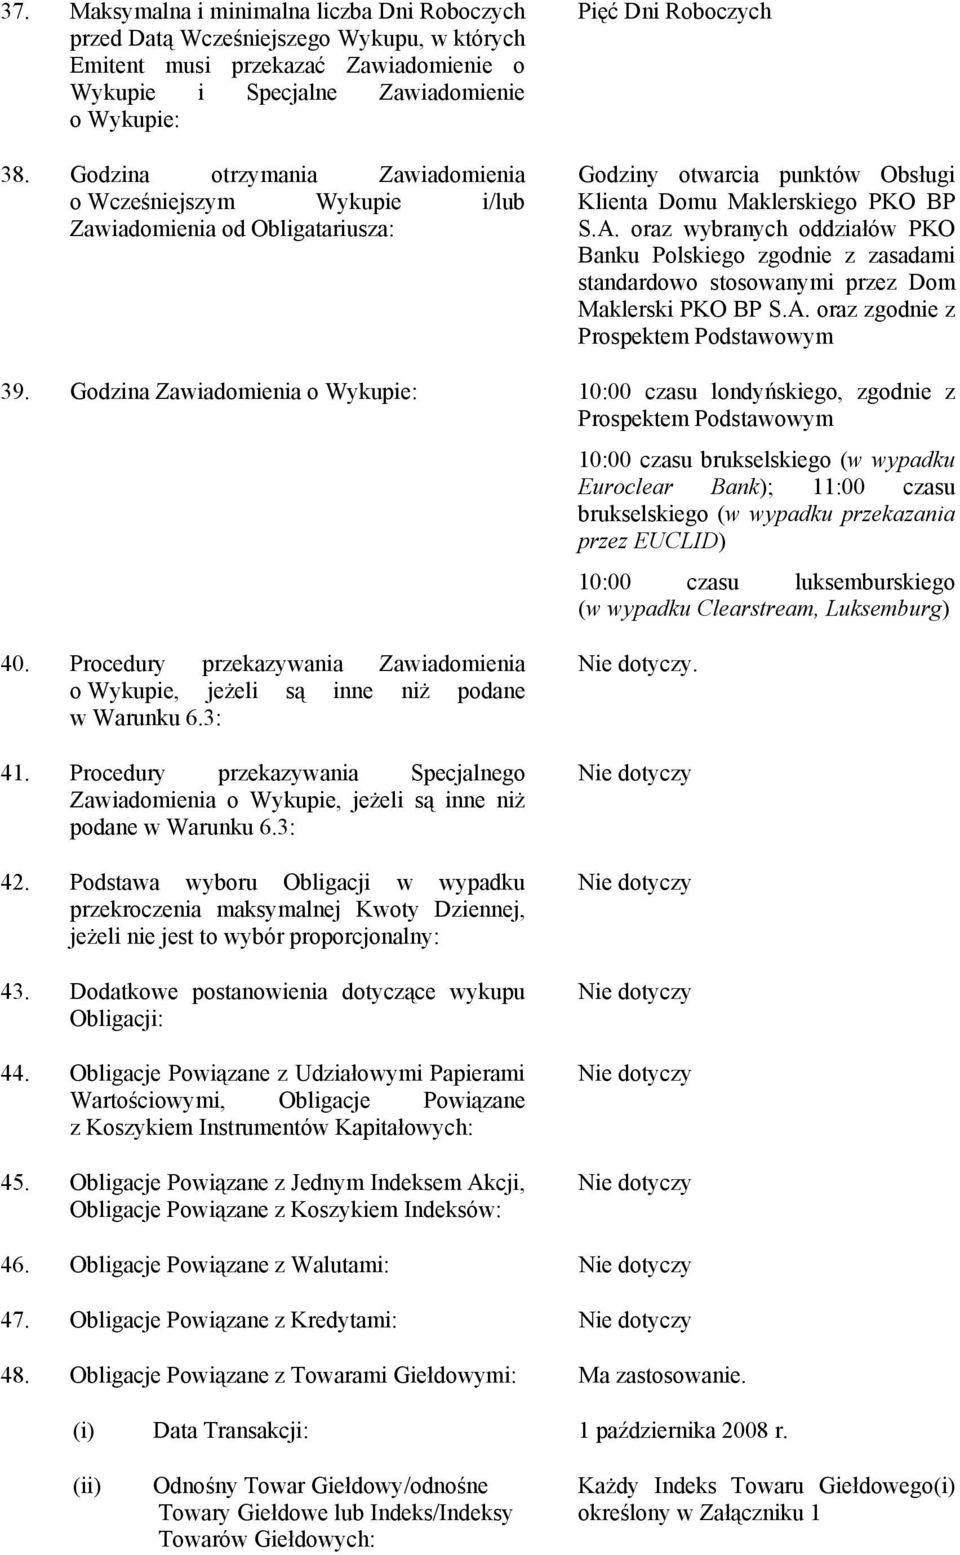 oraz wybranych oddziałów PKO Banku Polskiego zgodnie z zasadami standardowo stosowanymi przez Dom Maklerski PKO BP S.A. oraz zgodnie z Prospektem Podstawowym 39.